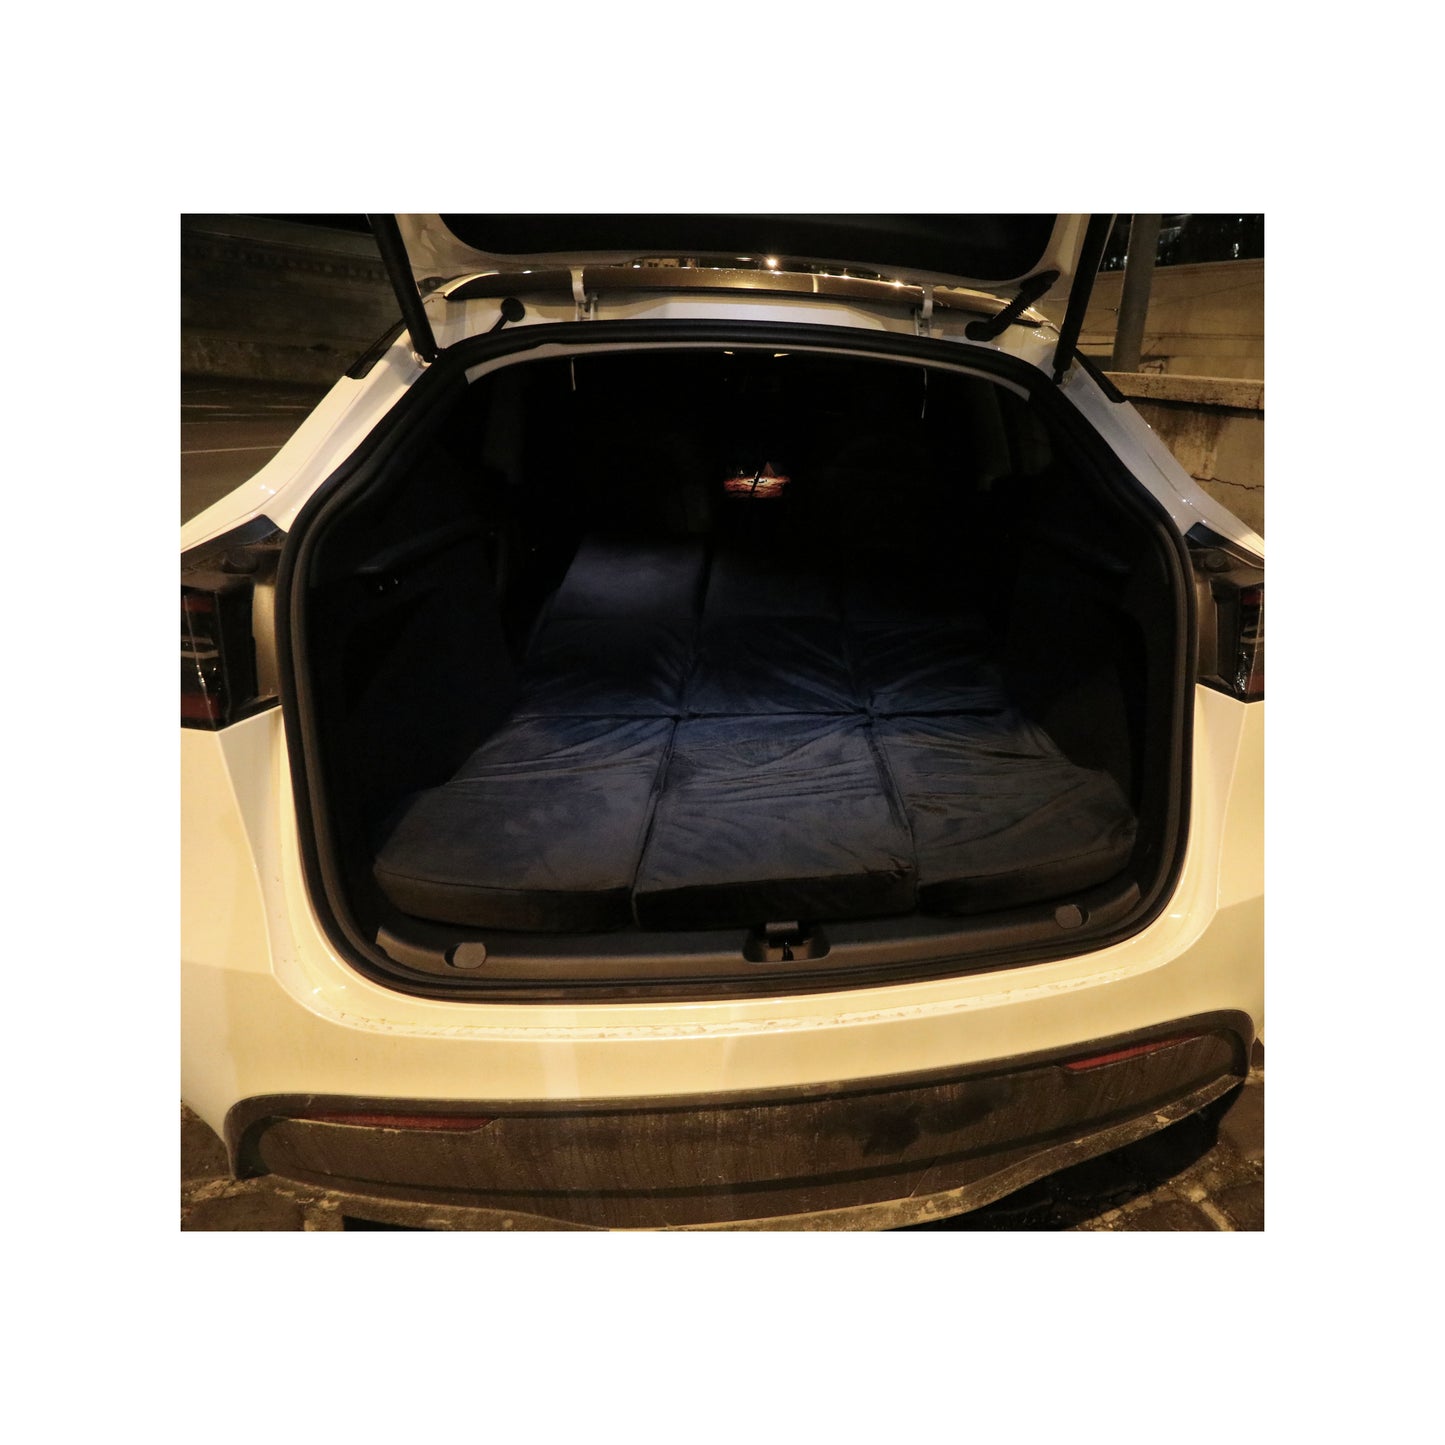 EV-MATS Deluxe CAMP SET voor Tesla Model 3 met Tesla-matras met waterdichte tas voor de achterste kofferbak, satijnen hoeslaken, dekbed, 2 kussens met hoezen, 11 tinten en 2 waterdichte tassen voor de voorste kofferbak van Model 3